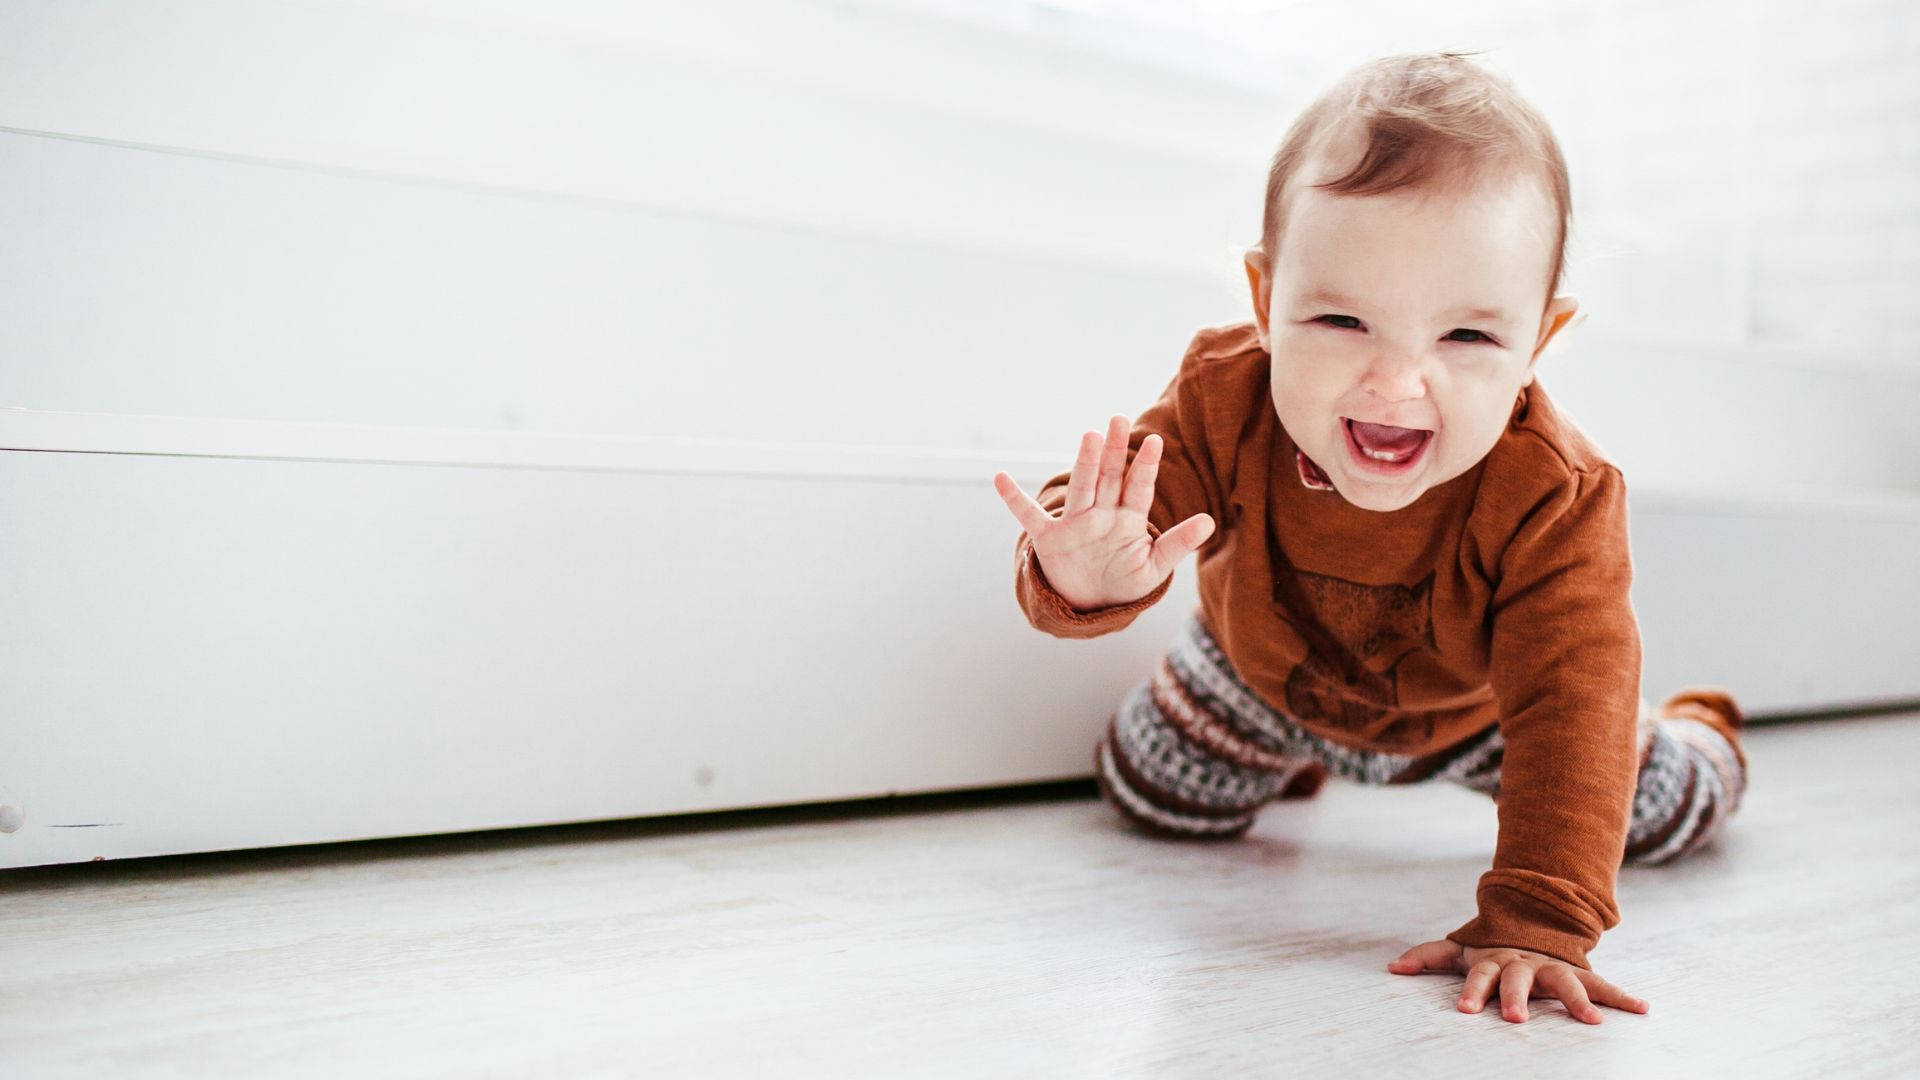 Babyfotografi kravlende spædbarn Wallpaper